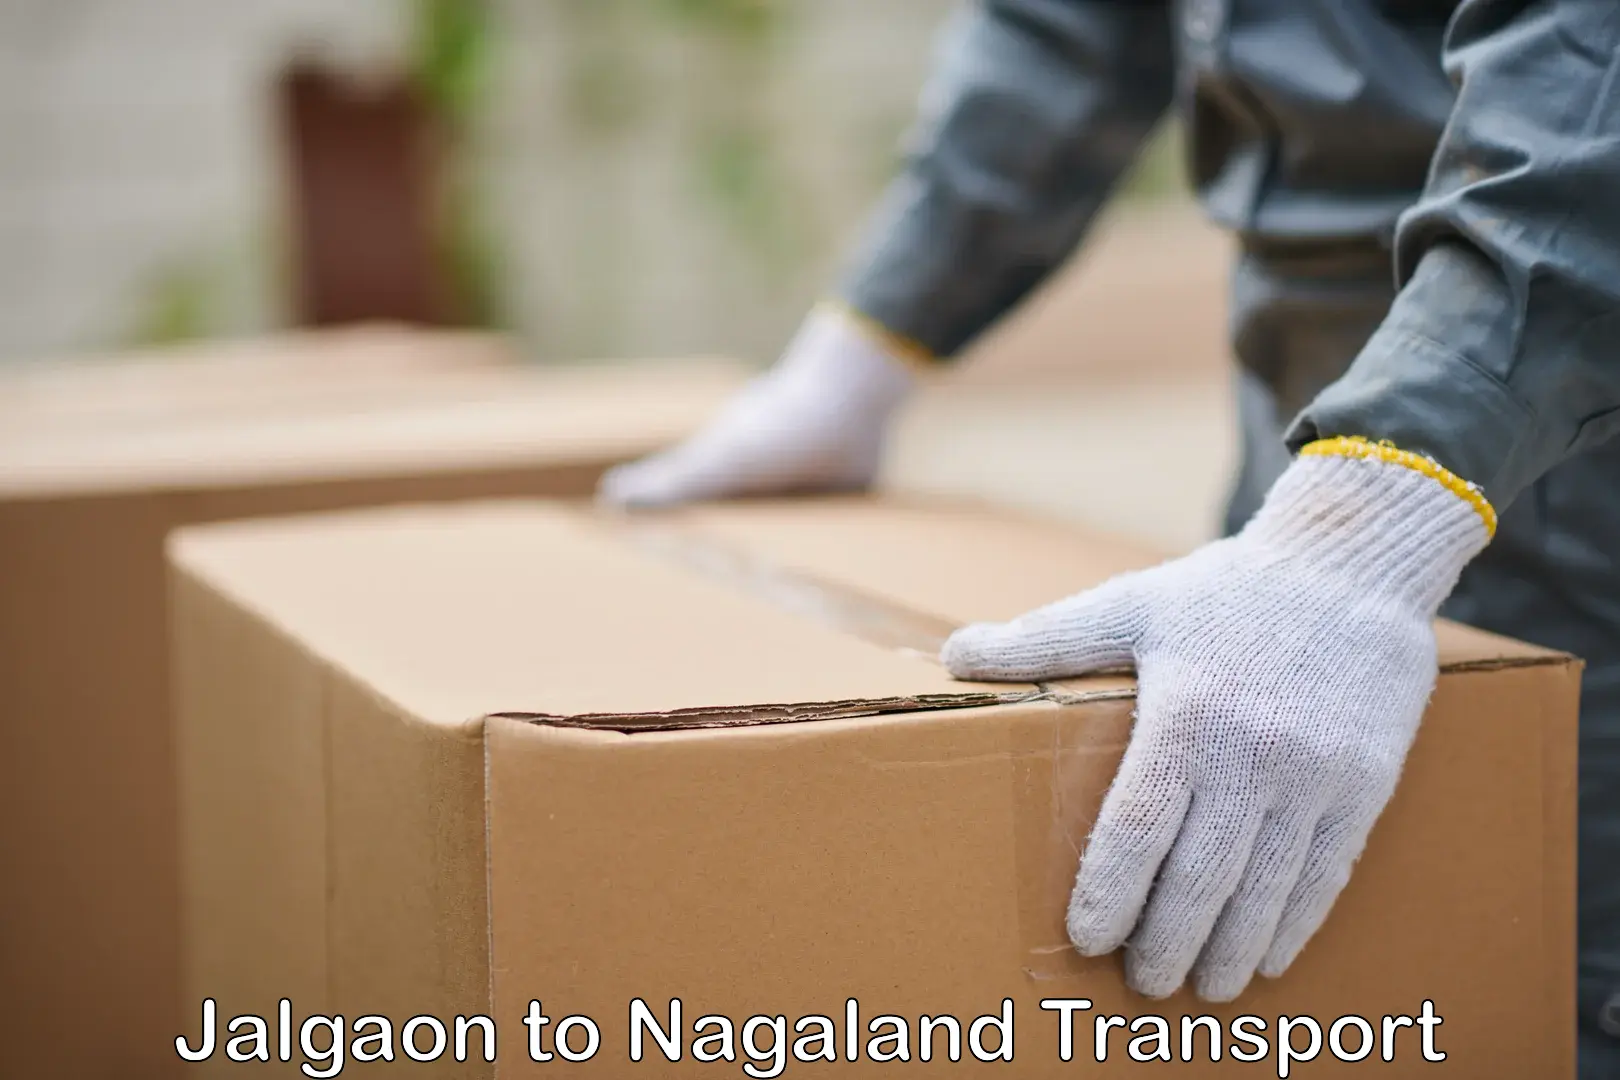 Shipping partner Jalgaon to Nagaland